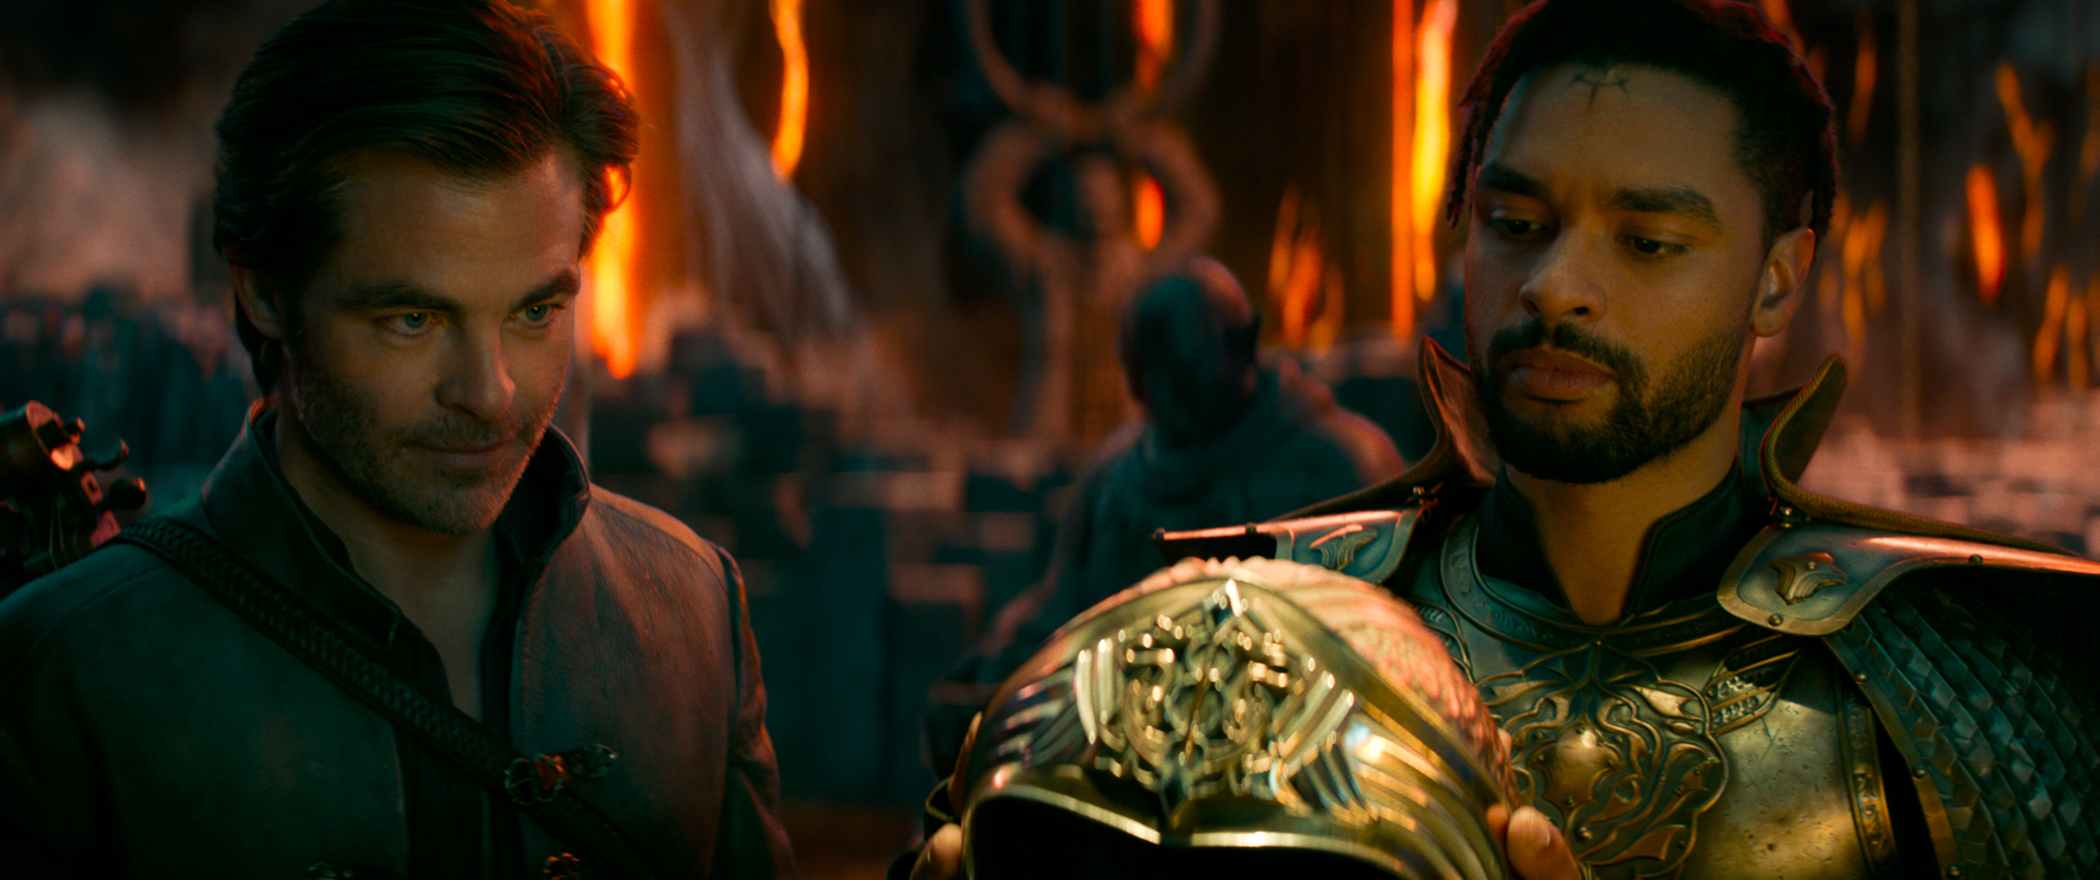 Chris Pine als Edgin und Regé-Jean Page als Xenk in Dungeons & Dragons: Ehre unter Dieben